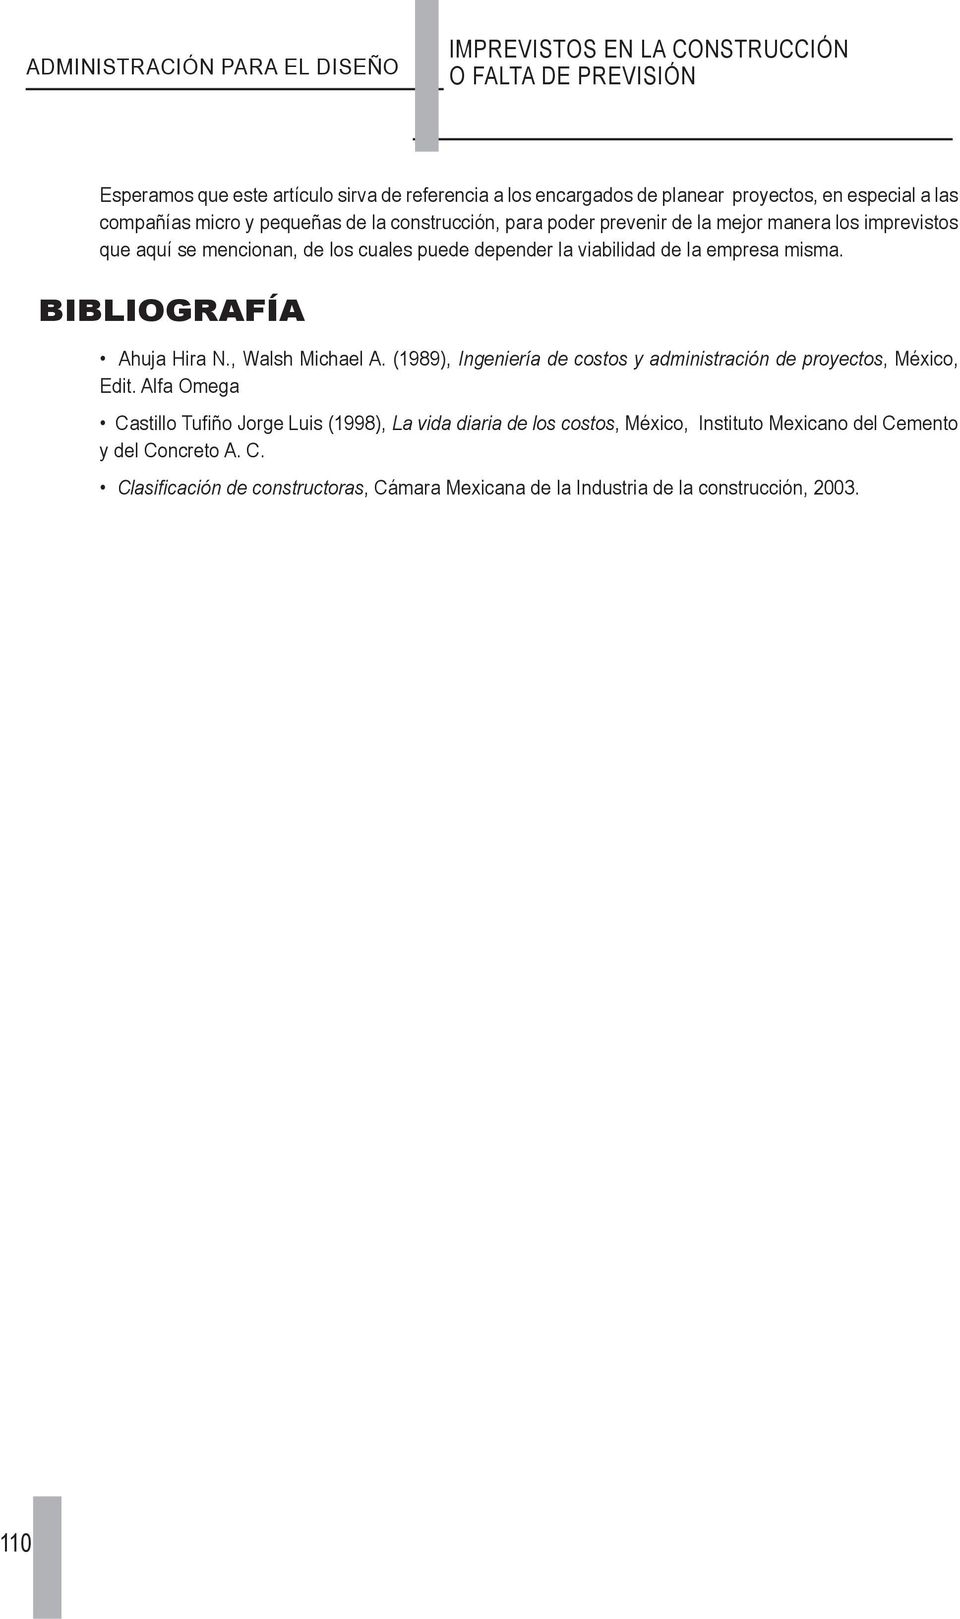 empresa misma. BIBLIOGRAFÍA Ahuja Hira N., Walsh Michael A. (1989), Ingeniería de costos y administración de proyectos, México, Edit.